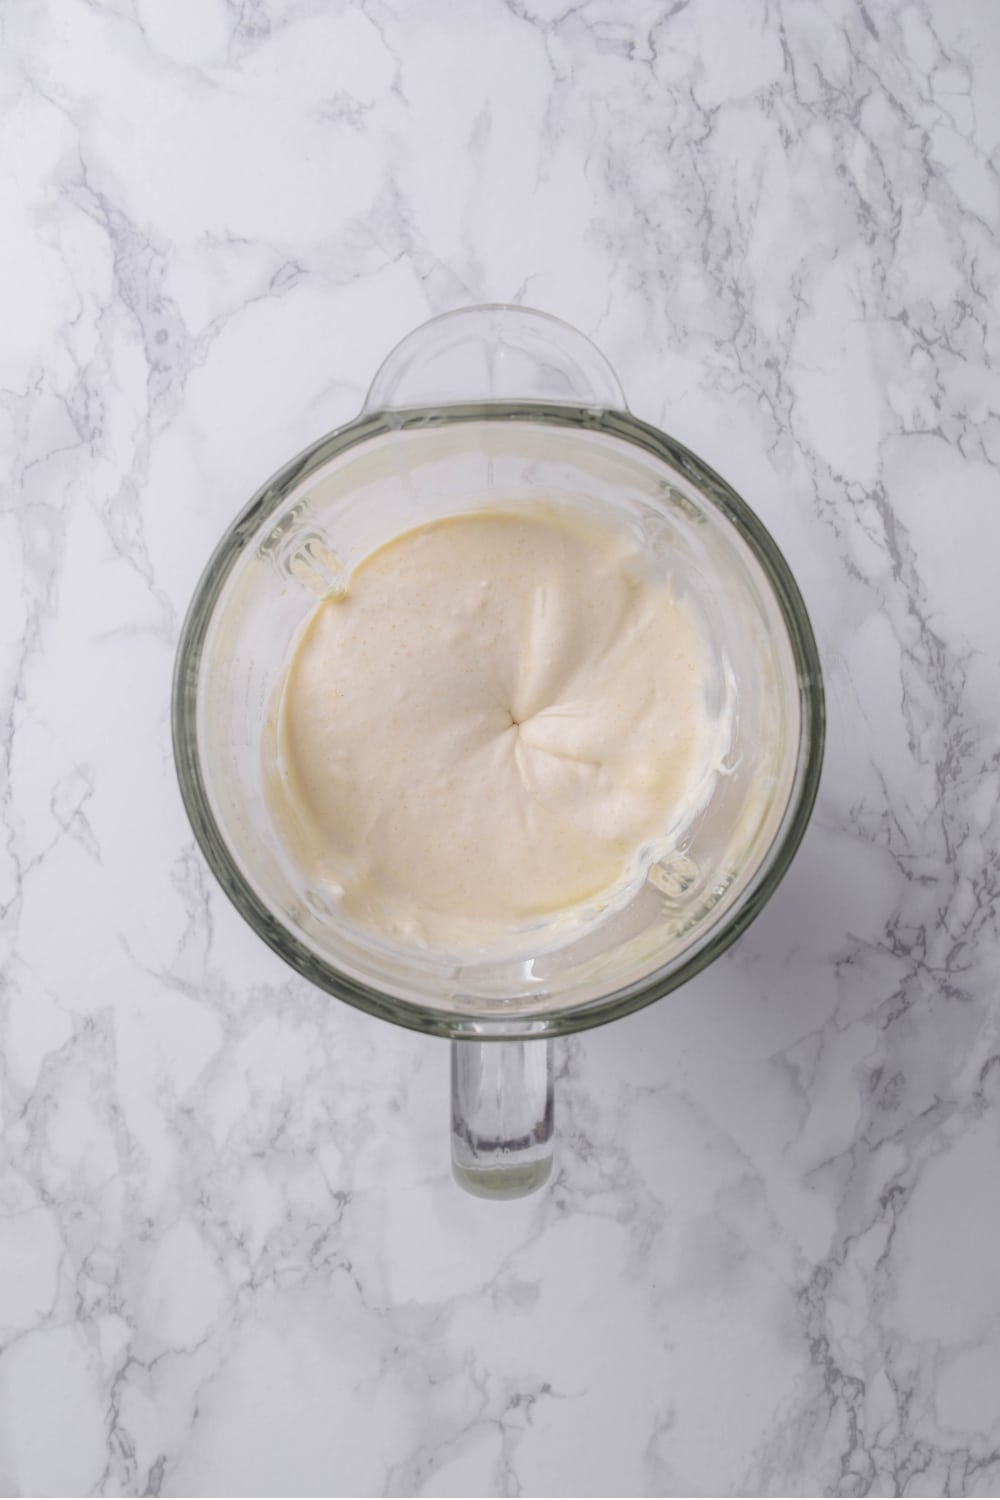 A glass blender blending a vanilla protein ice cream mixture.